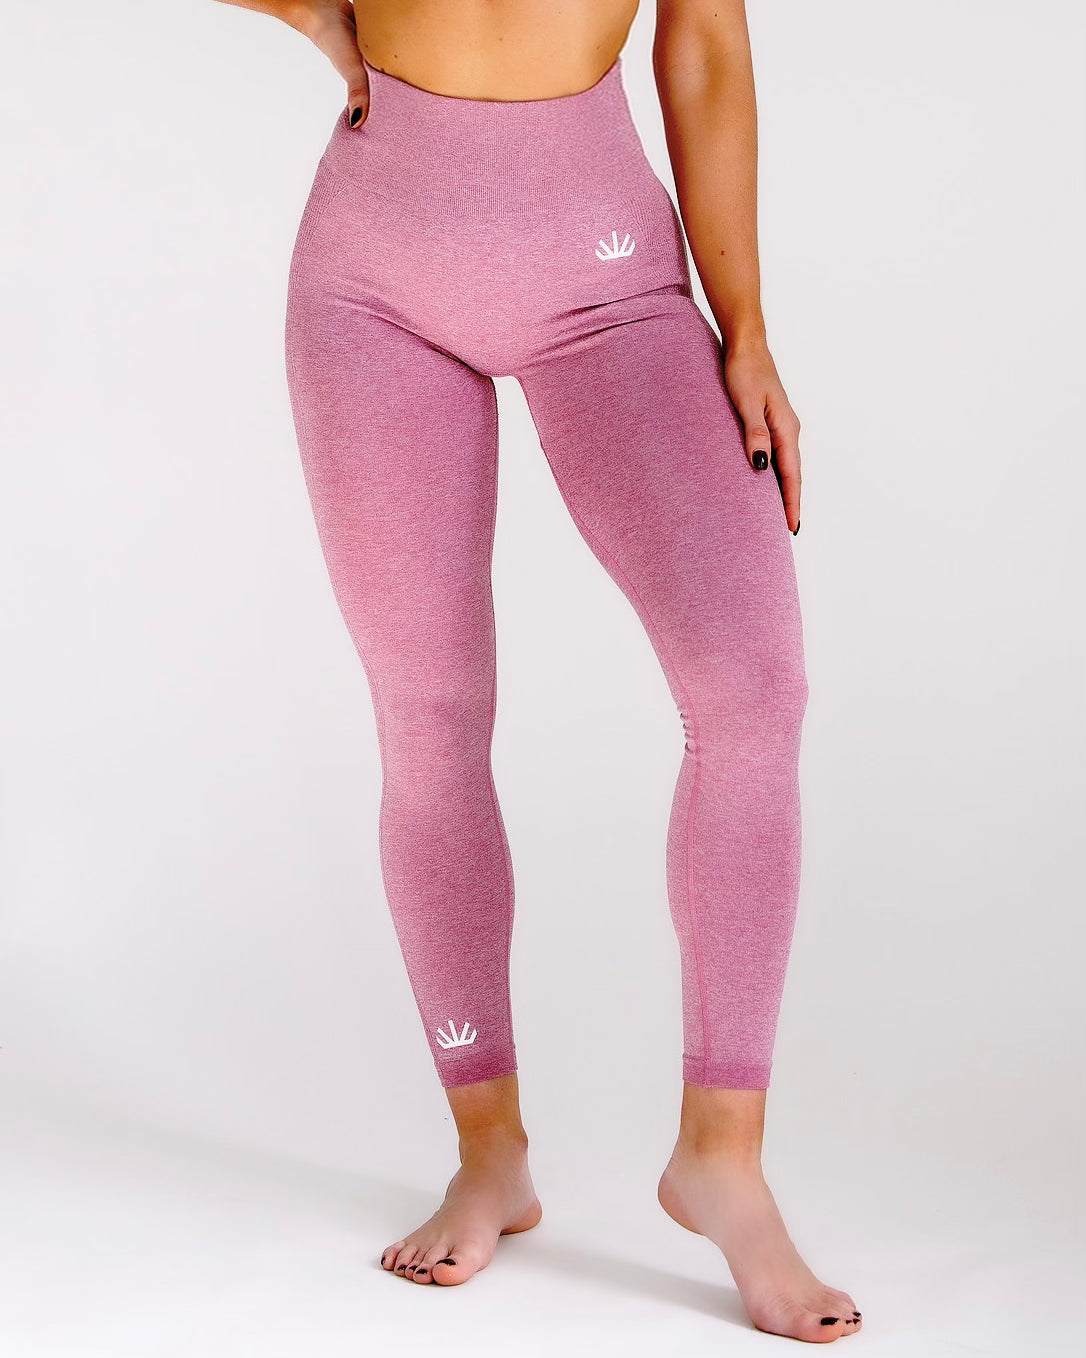 Flo Pink Seamless Butt Lift Gym Leggings - Splashwear